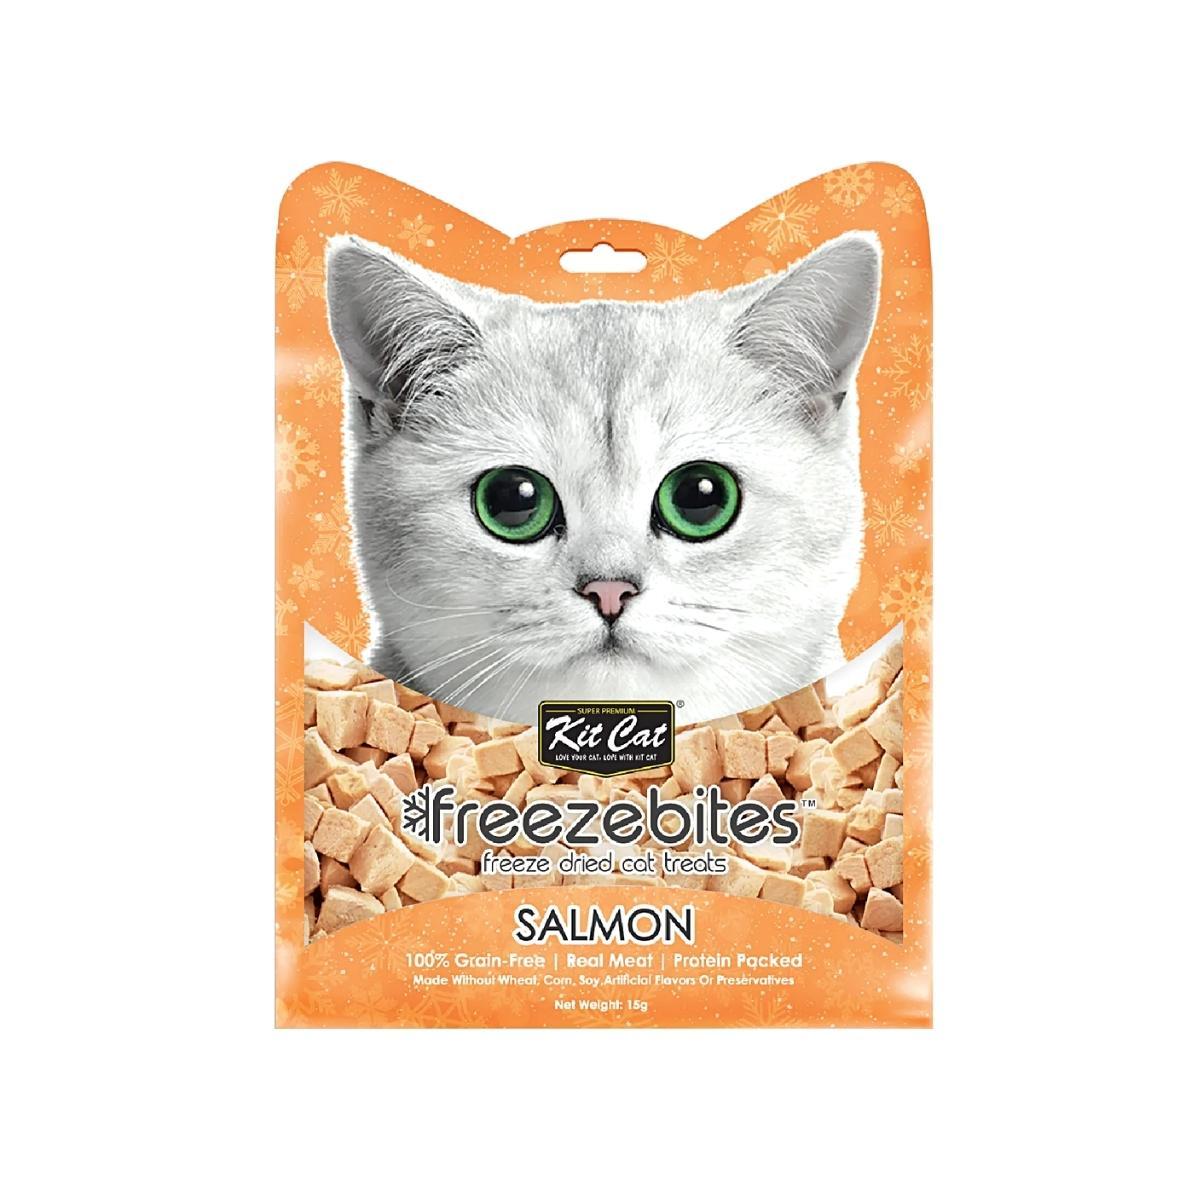 Kit Cat Freeze Bites Salmon 15g